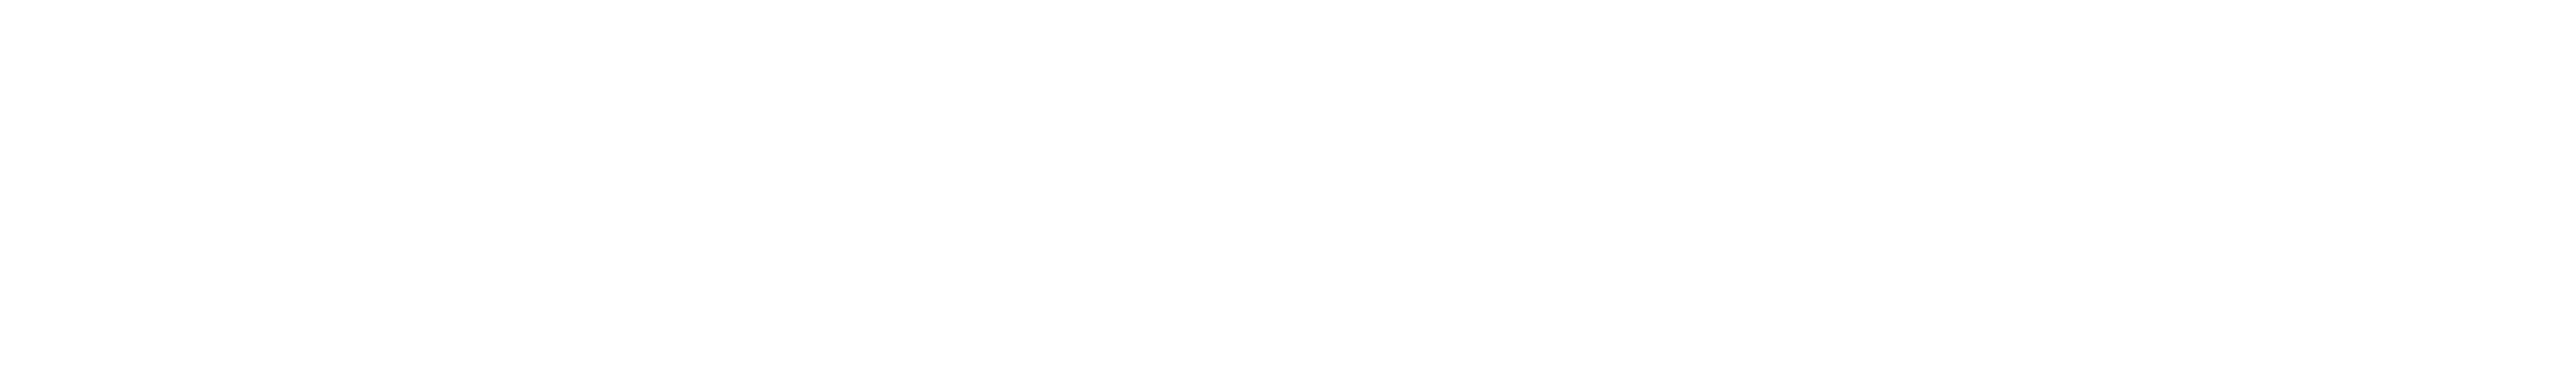 Logo AJSPI header